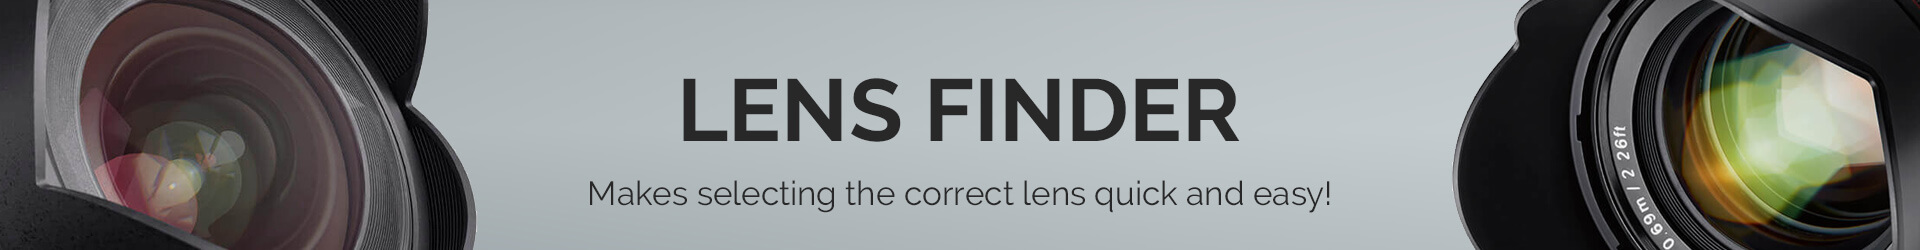 Lens Finder